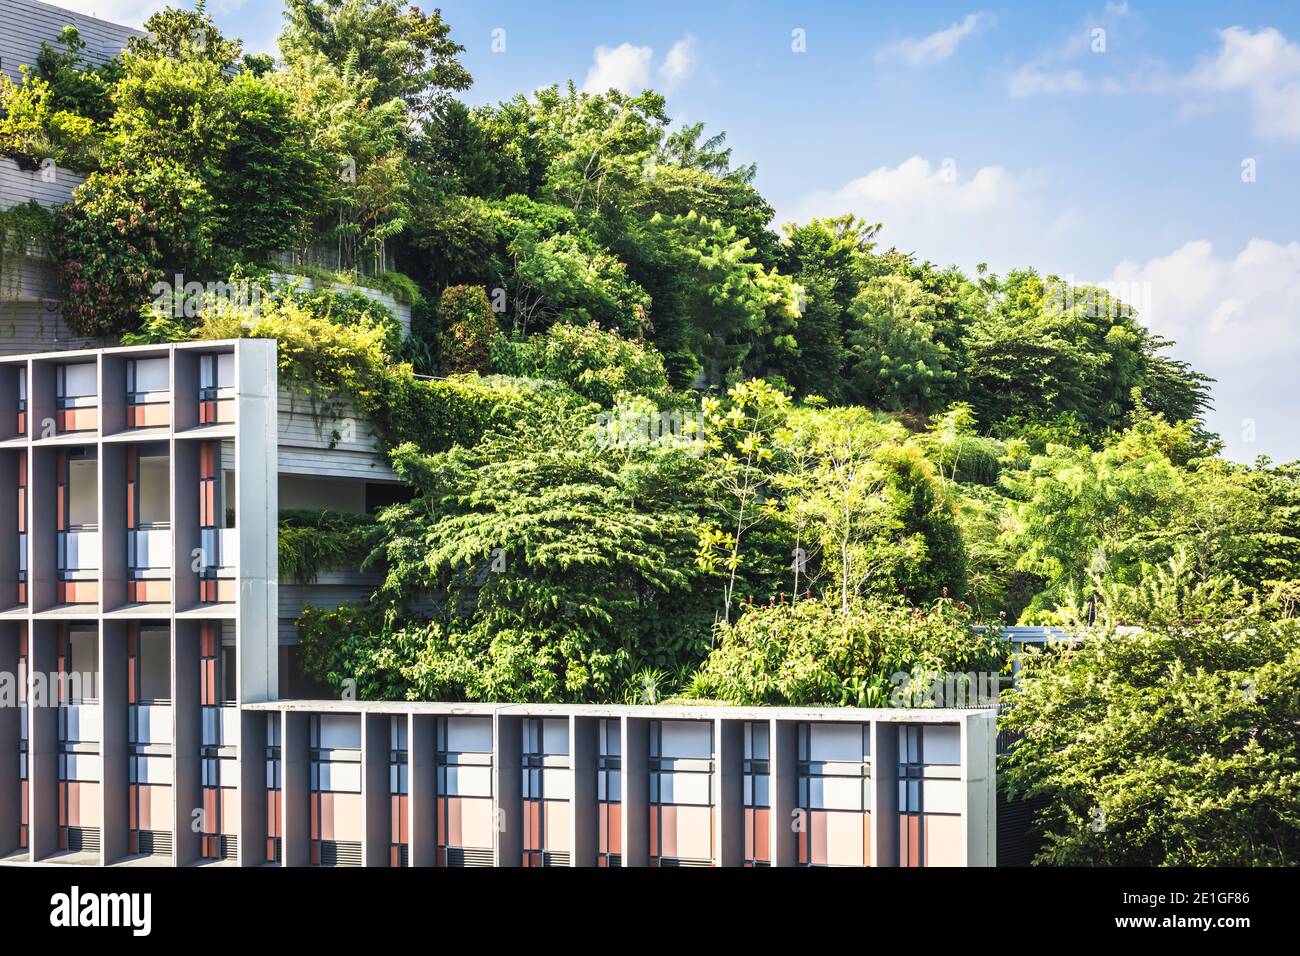 Kampung Admiralty in Singapur, eine grüne Gemeinschaft integrierte Entwicklung. World Building of the Year beim World Architecture Festival 2018 Stockfoto